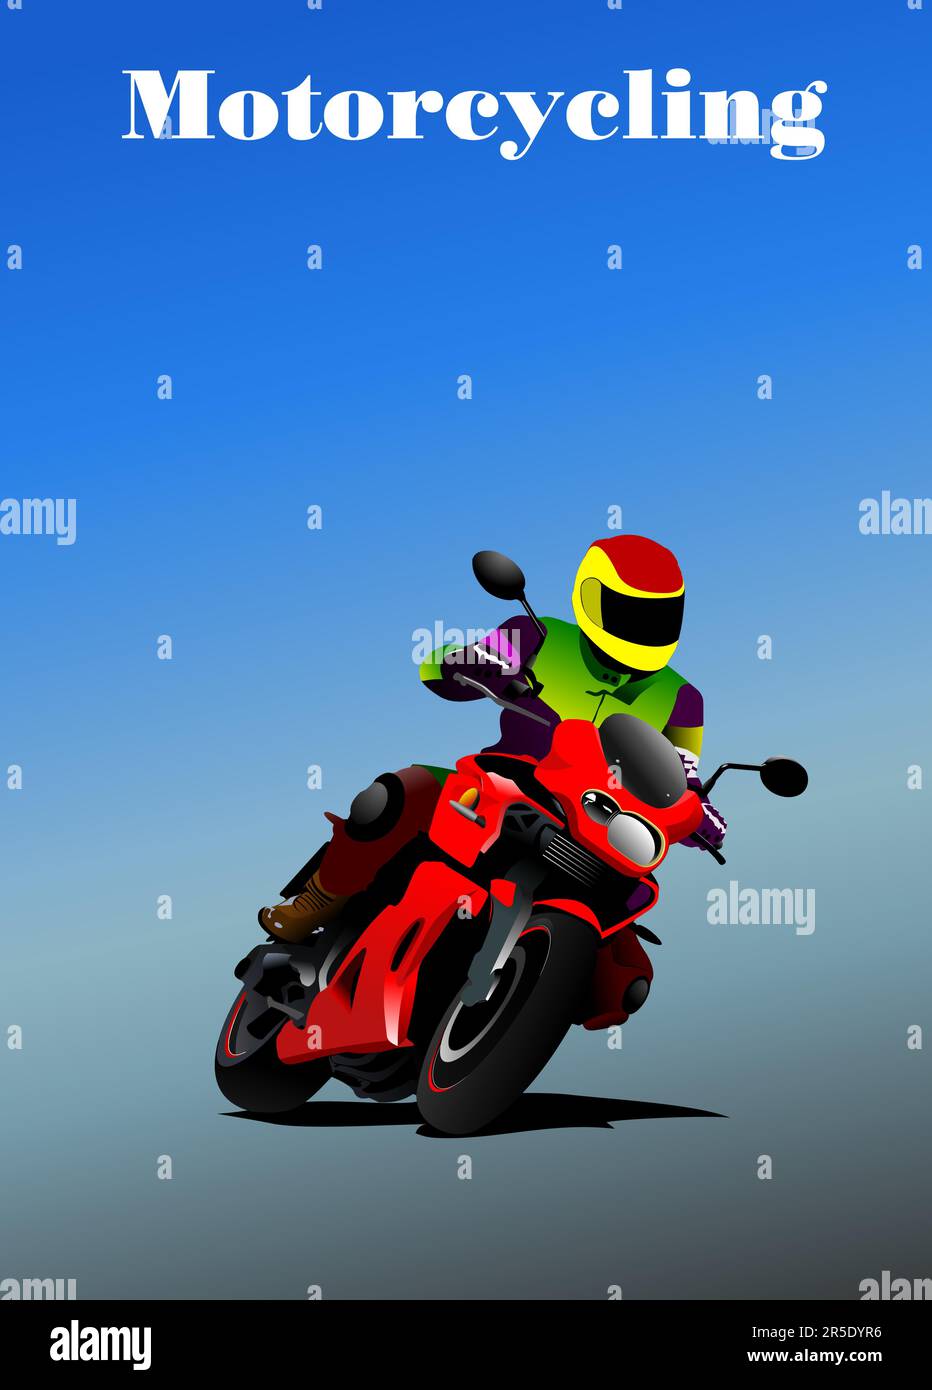 Himmelshintergrund mit Motorradbild. Vektor 3D-Abbildung Stock Vektor